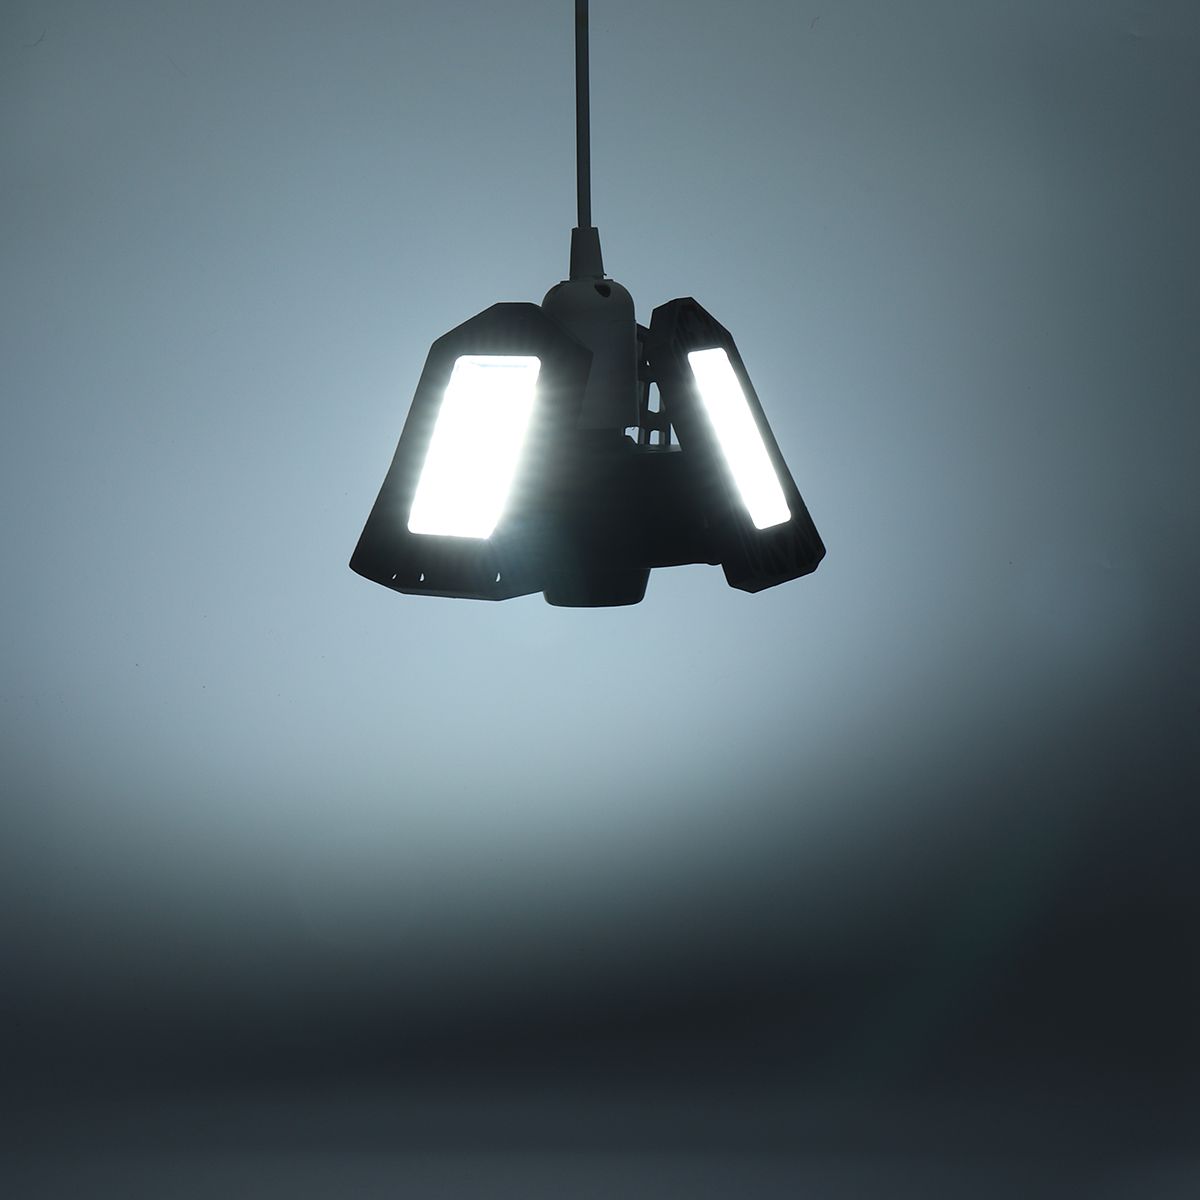 Foldable-LED-E27-Light-Adjustable-Deformation-Ceiling-Lamp-Workshop-Garage-Home-1668843